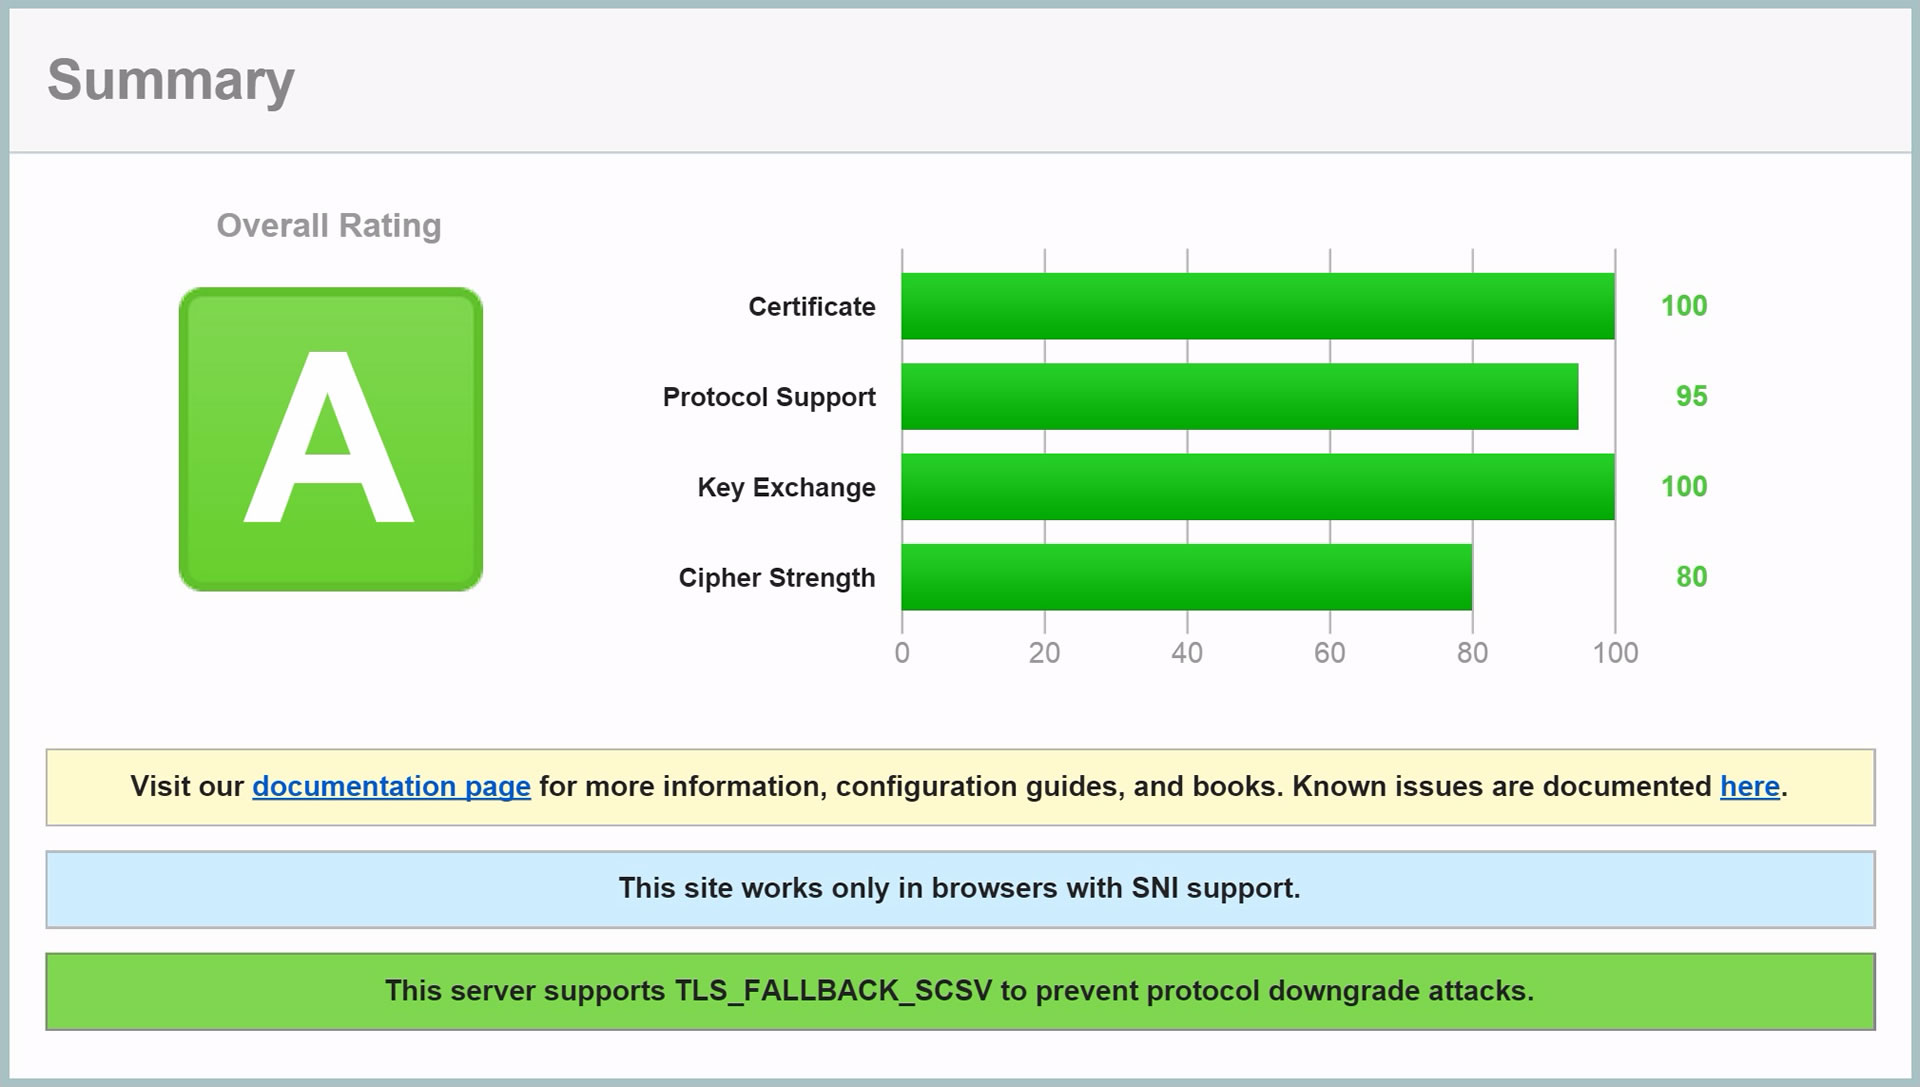 Report 30. X-TLS тесты. WEBREPOVERALL rating что это.